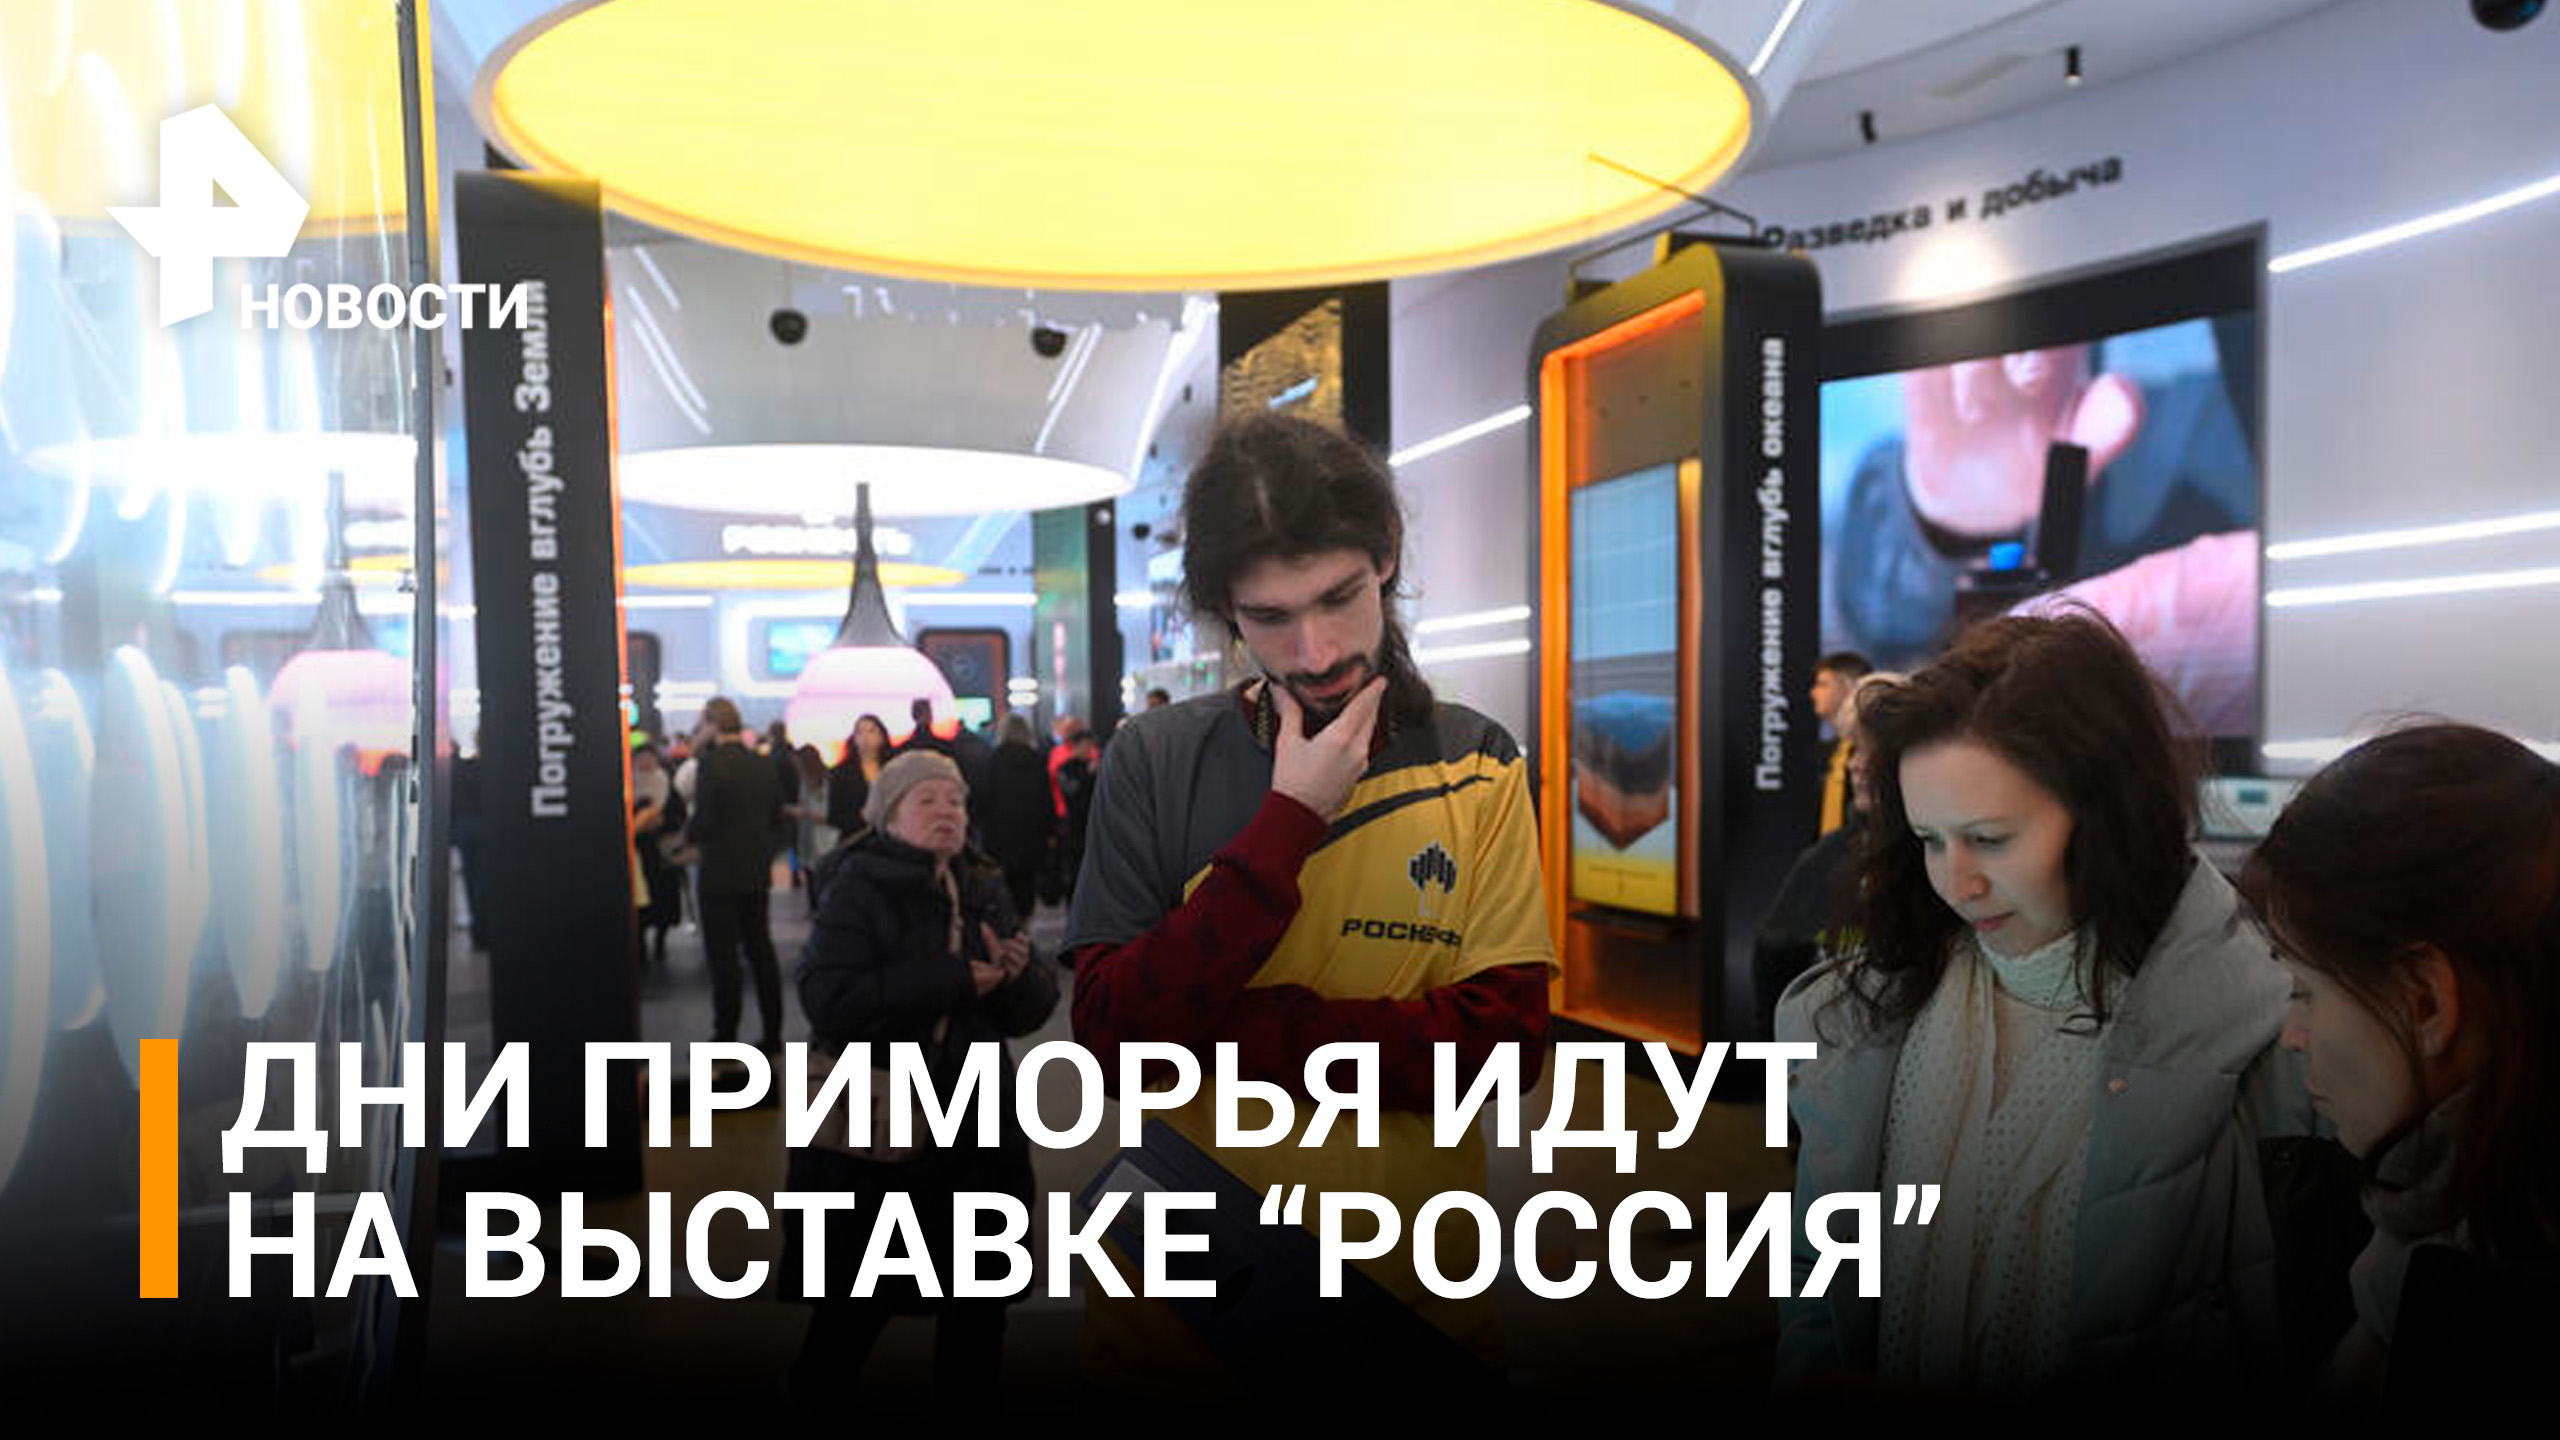 В павильоне "Роснефти" на выставке-форуме "Россия" идут дни Приморья / РЕН Новости